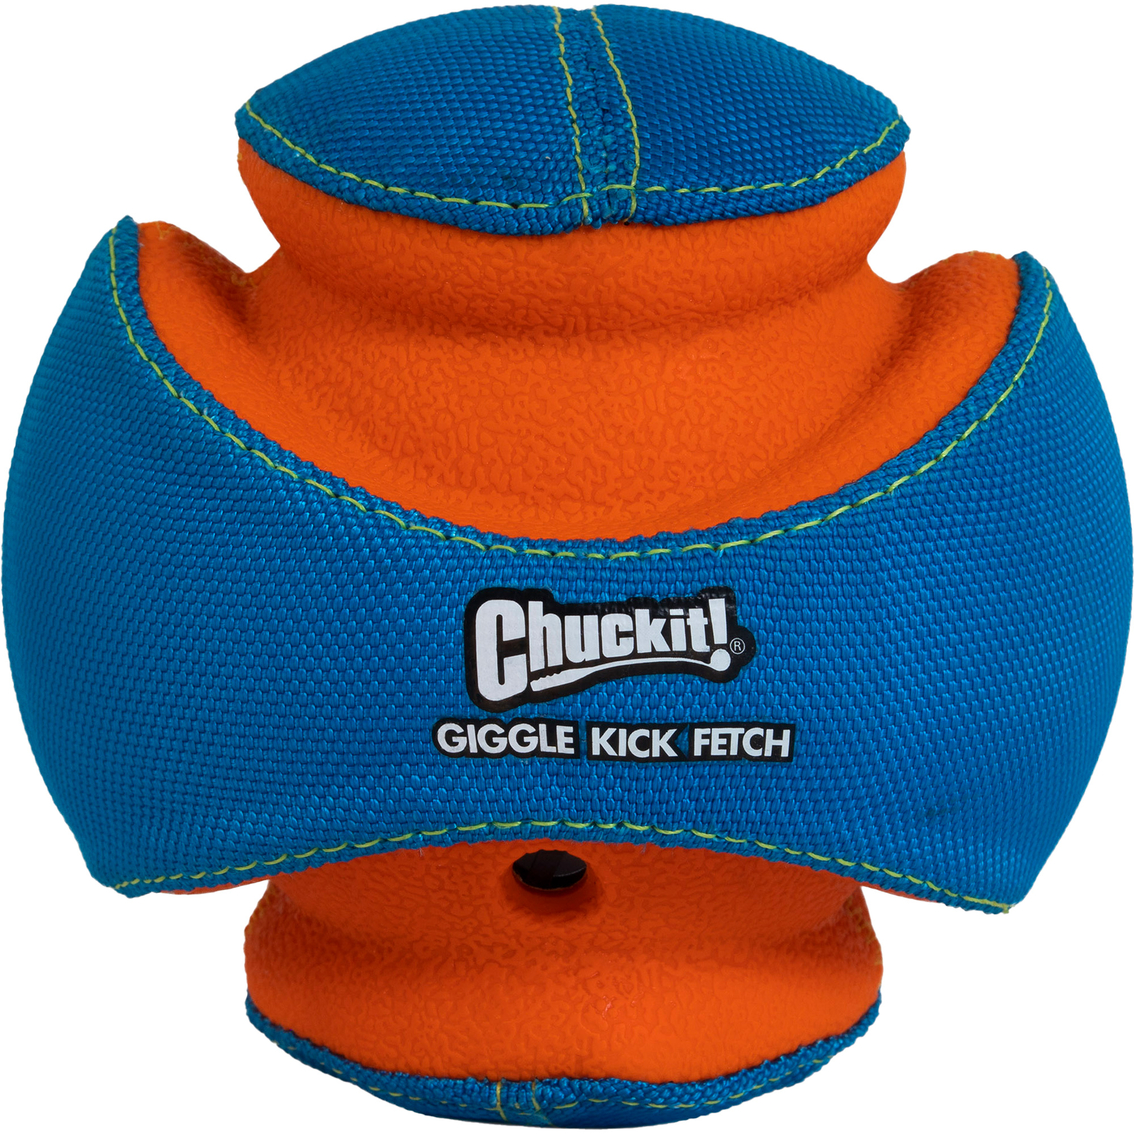 Petmate ChuckIt! Giggle Kick Fetch Small Dog Toy Ball - Image 2 of 5